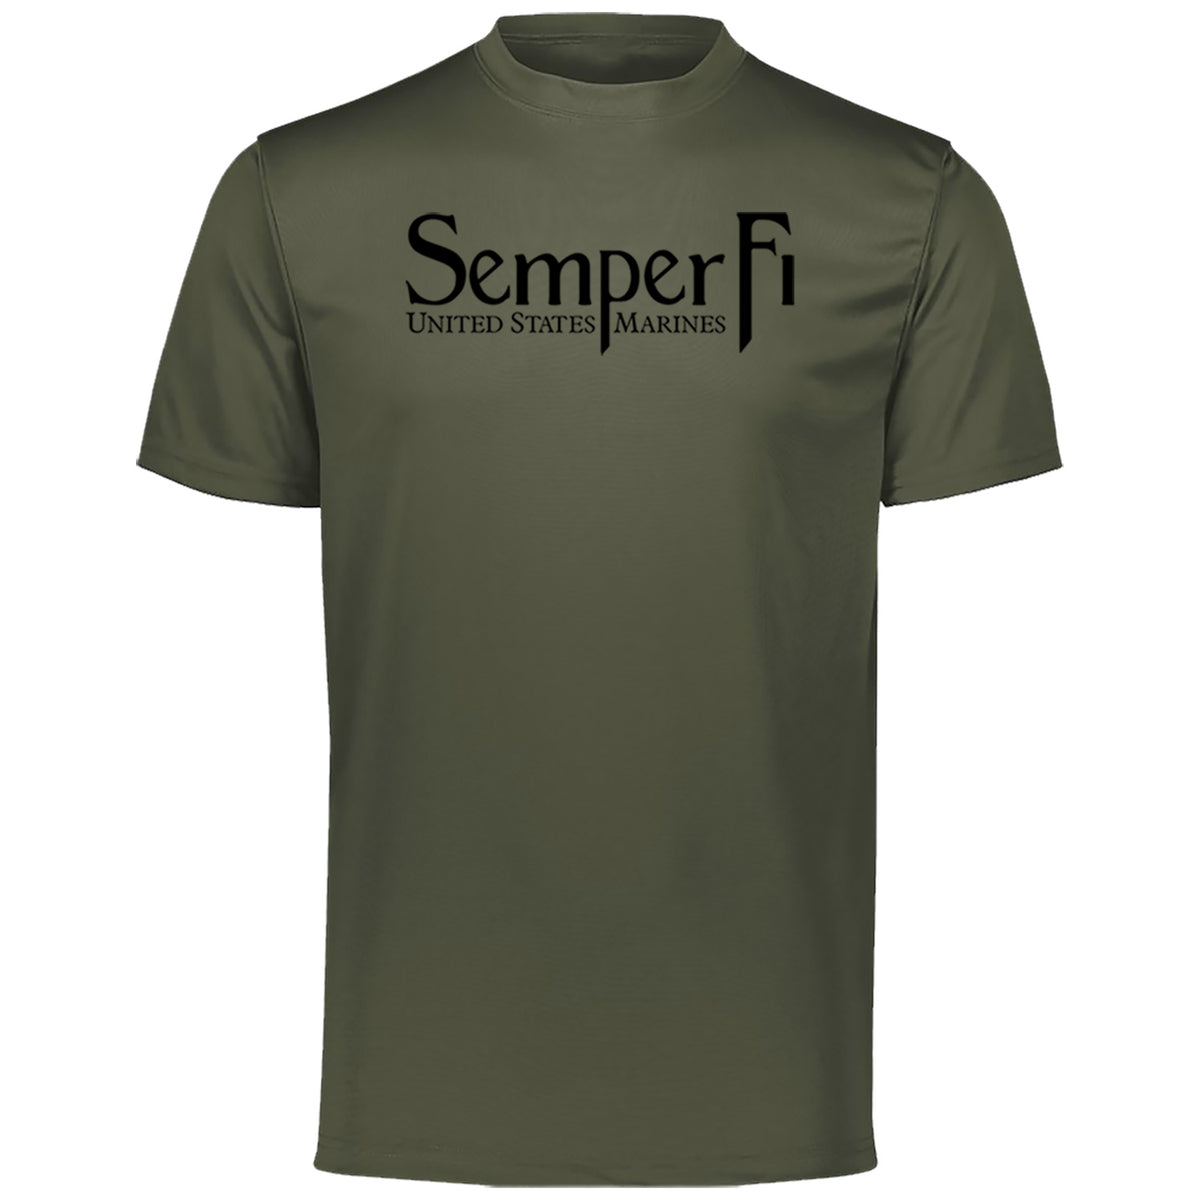 USMC Dri-Fit Performance Semper Fi OD Green T-Shirt